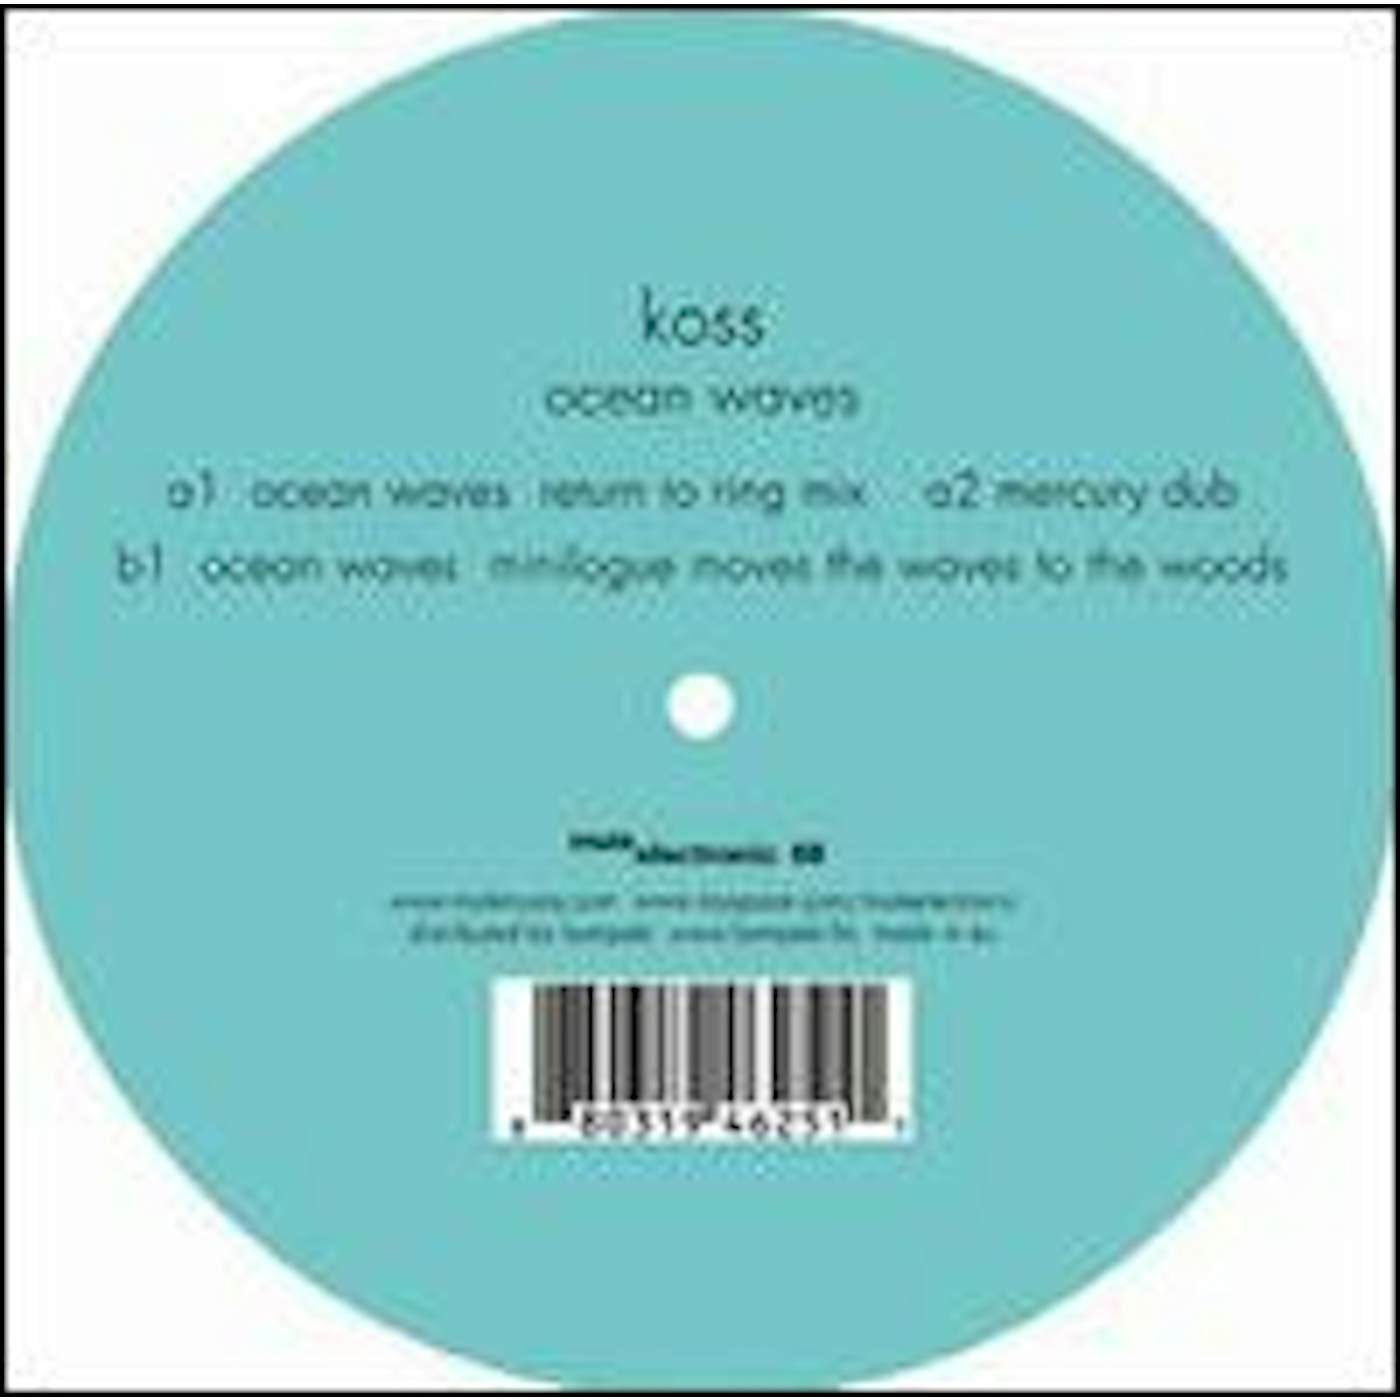 Koss Ocean Waves Vinyl Record